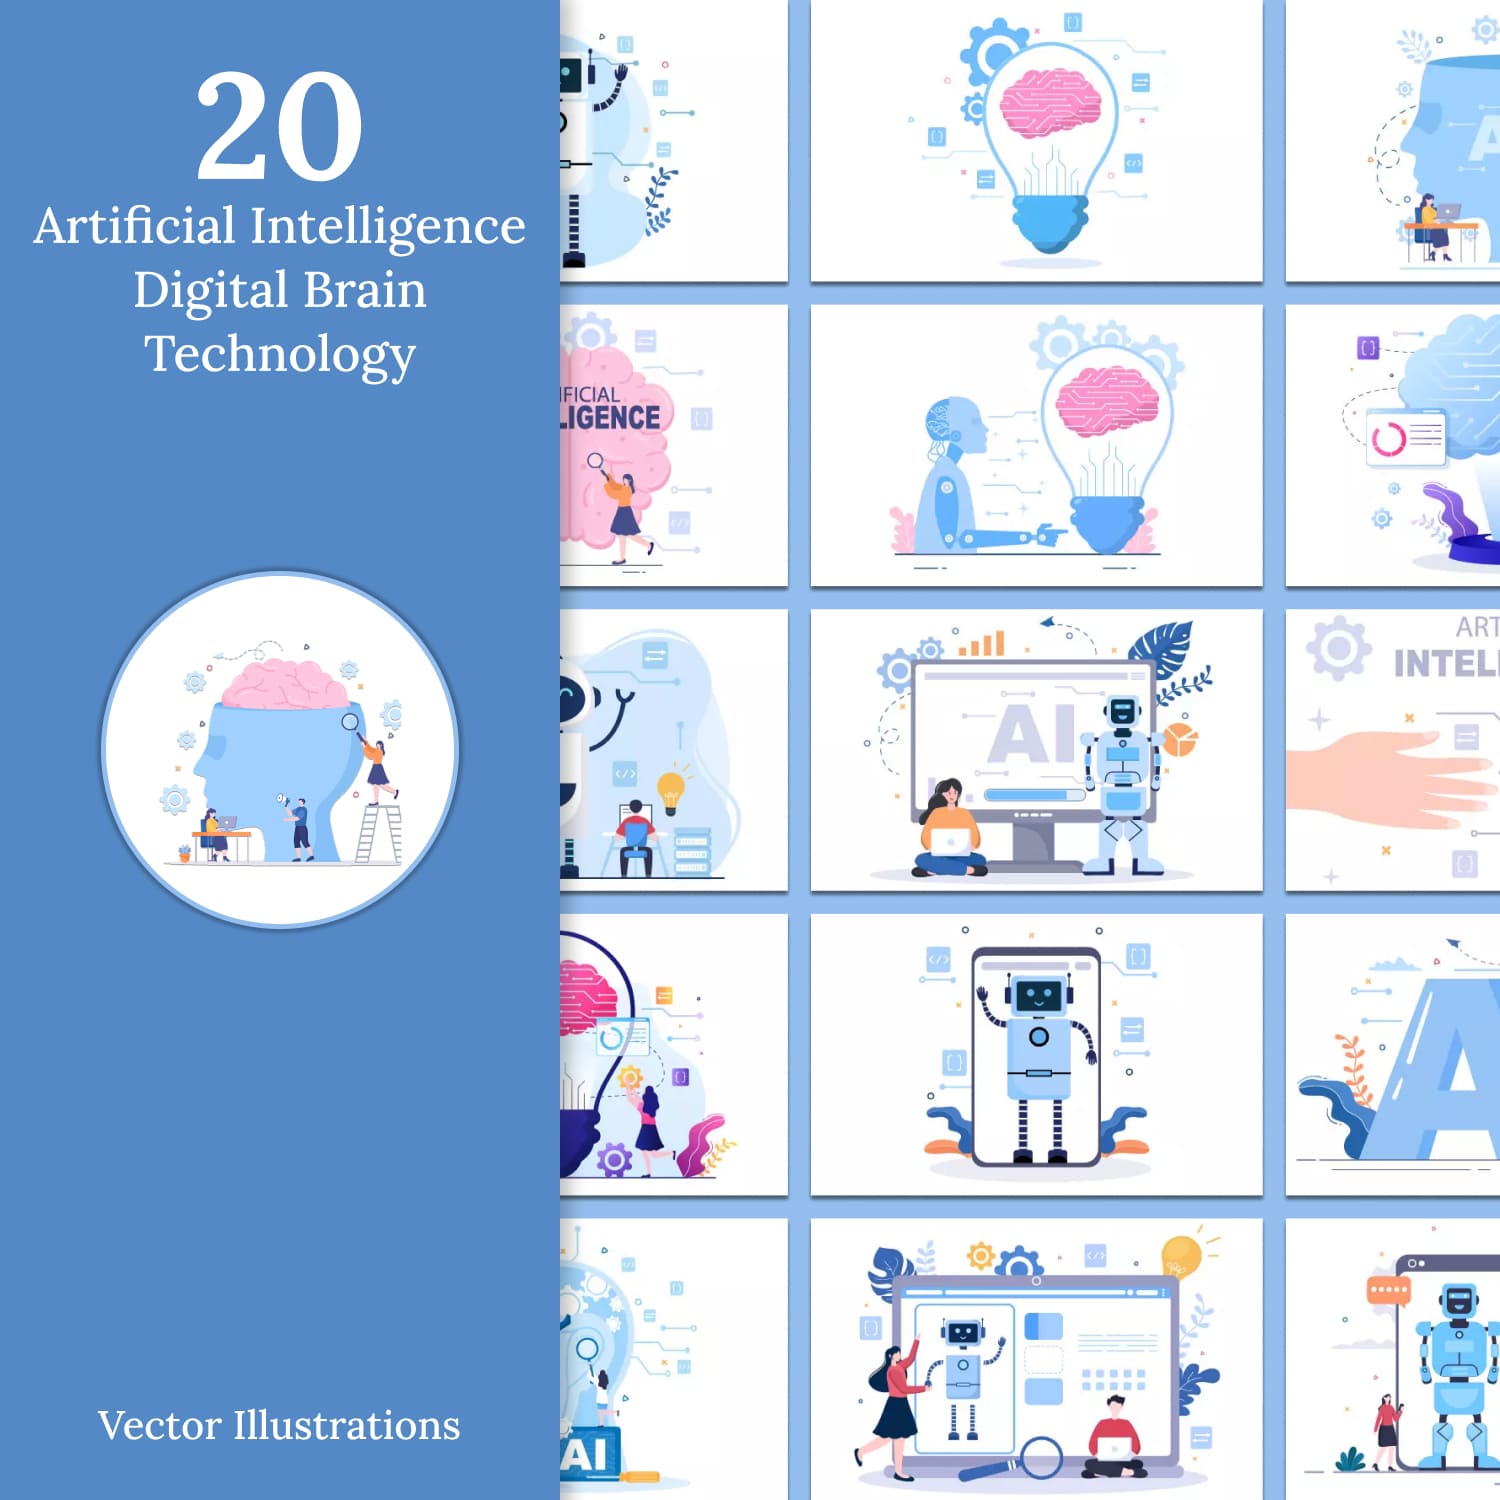 Artificial Intelligence Digital Brain Technology Vector Illustrations.